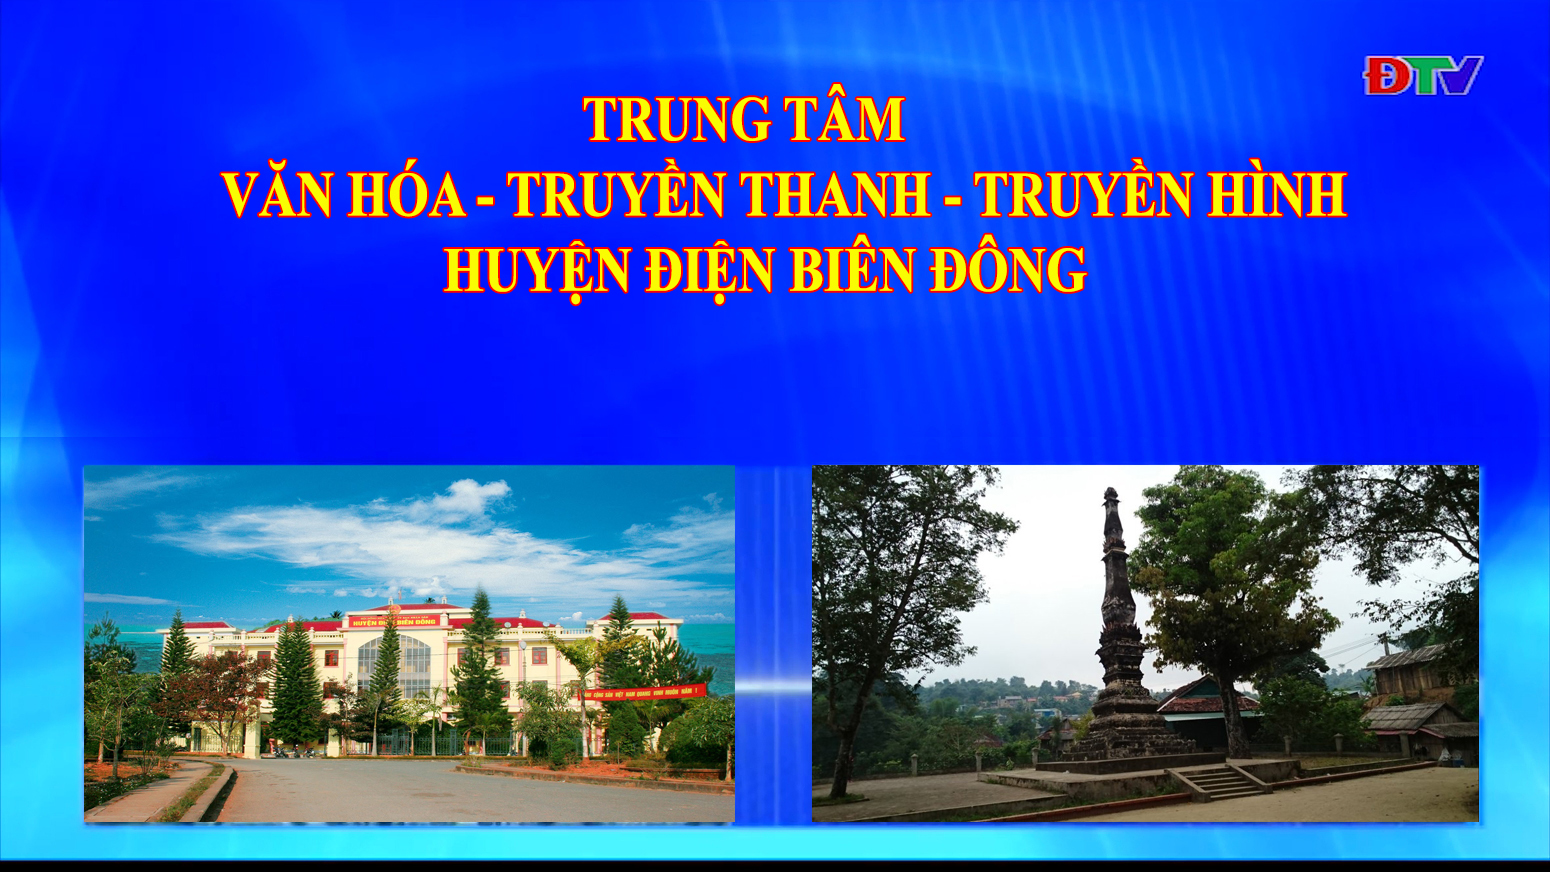 Trung tâm VH-TTTH huyện Điện Biên Đông (Ngày 17-4-2021)